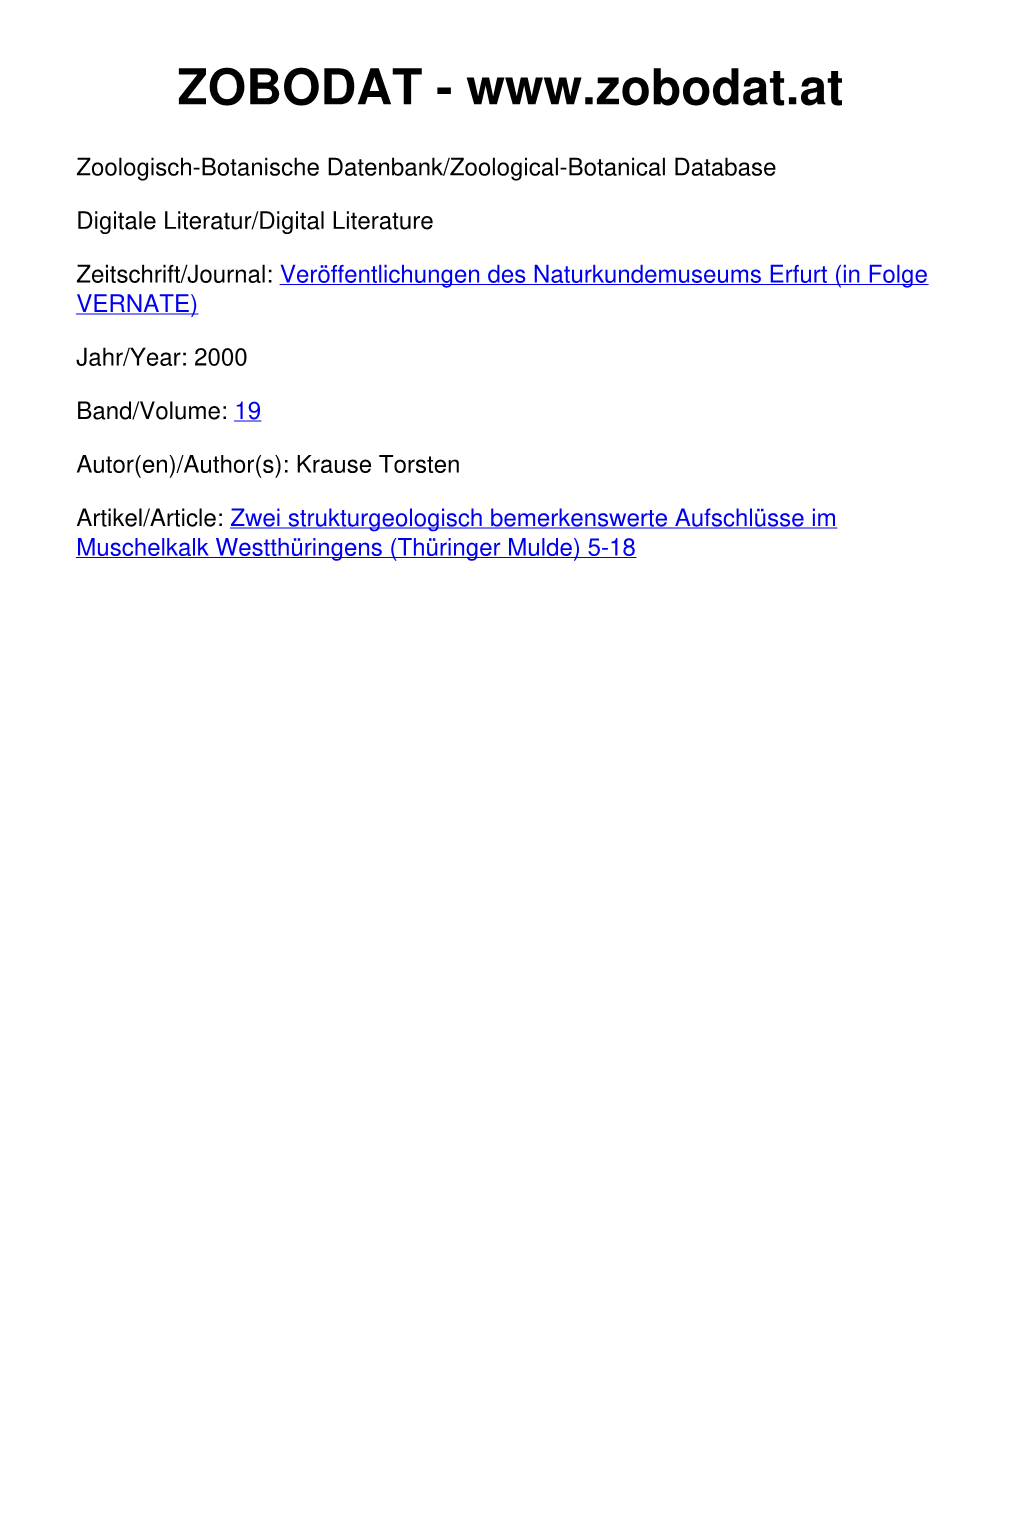 Zwei Strukturgeologisch Bemerkenswerte Aufschlüsse Im Muschelkalk Westthüringens (Thüringer Mulde) 5-18 ------� Veröffentlichungen Naturkundemuseum Erfurt 19/2000 S